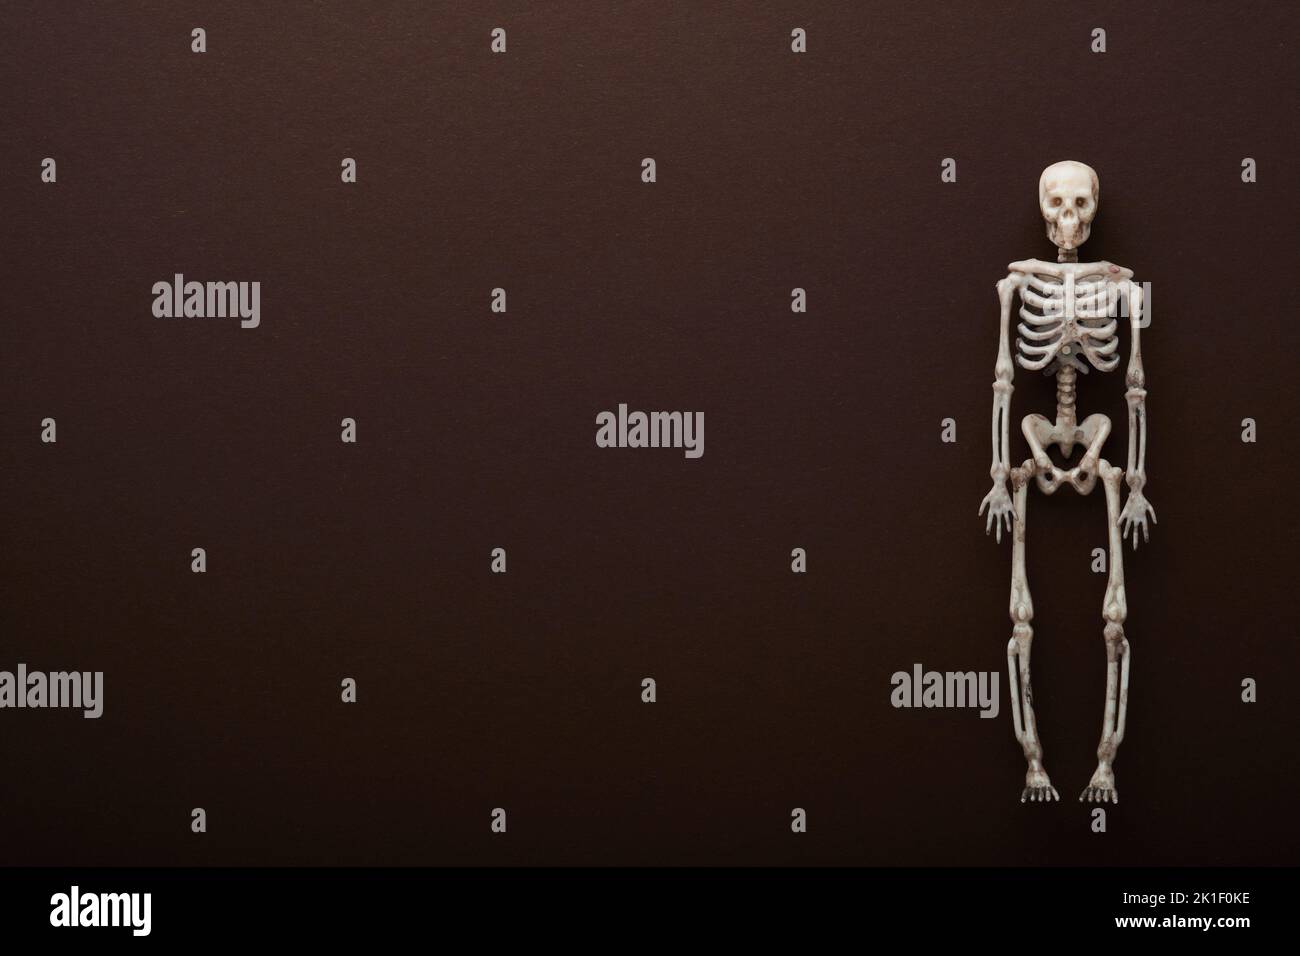 Halloween Skelett Hintergrund. Schwarze Papier Fledermaus Silhouetten auf braunem oder dunklem Hintergrund. Herbstschmuck. Halloween-Konzept. Draufsicht. Stockfoto